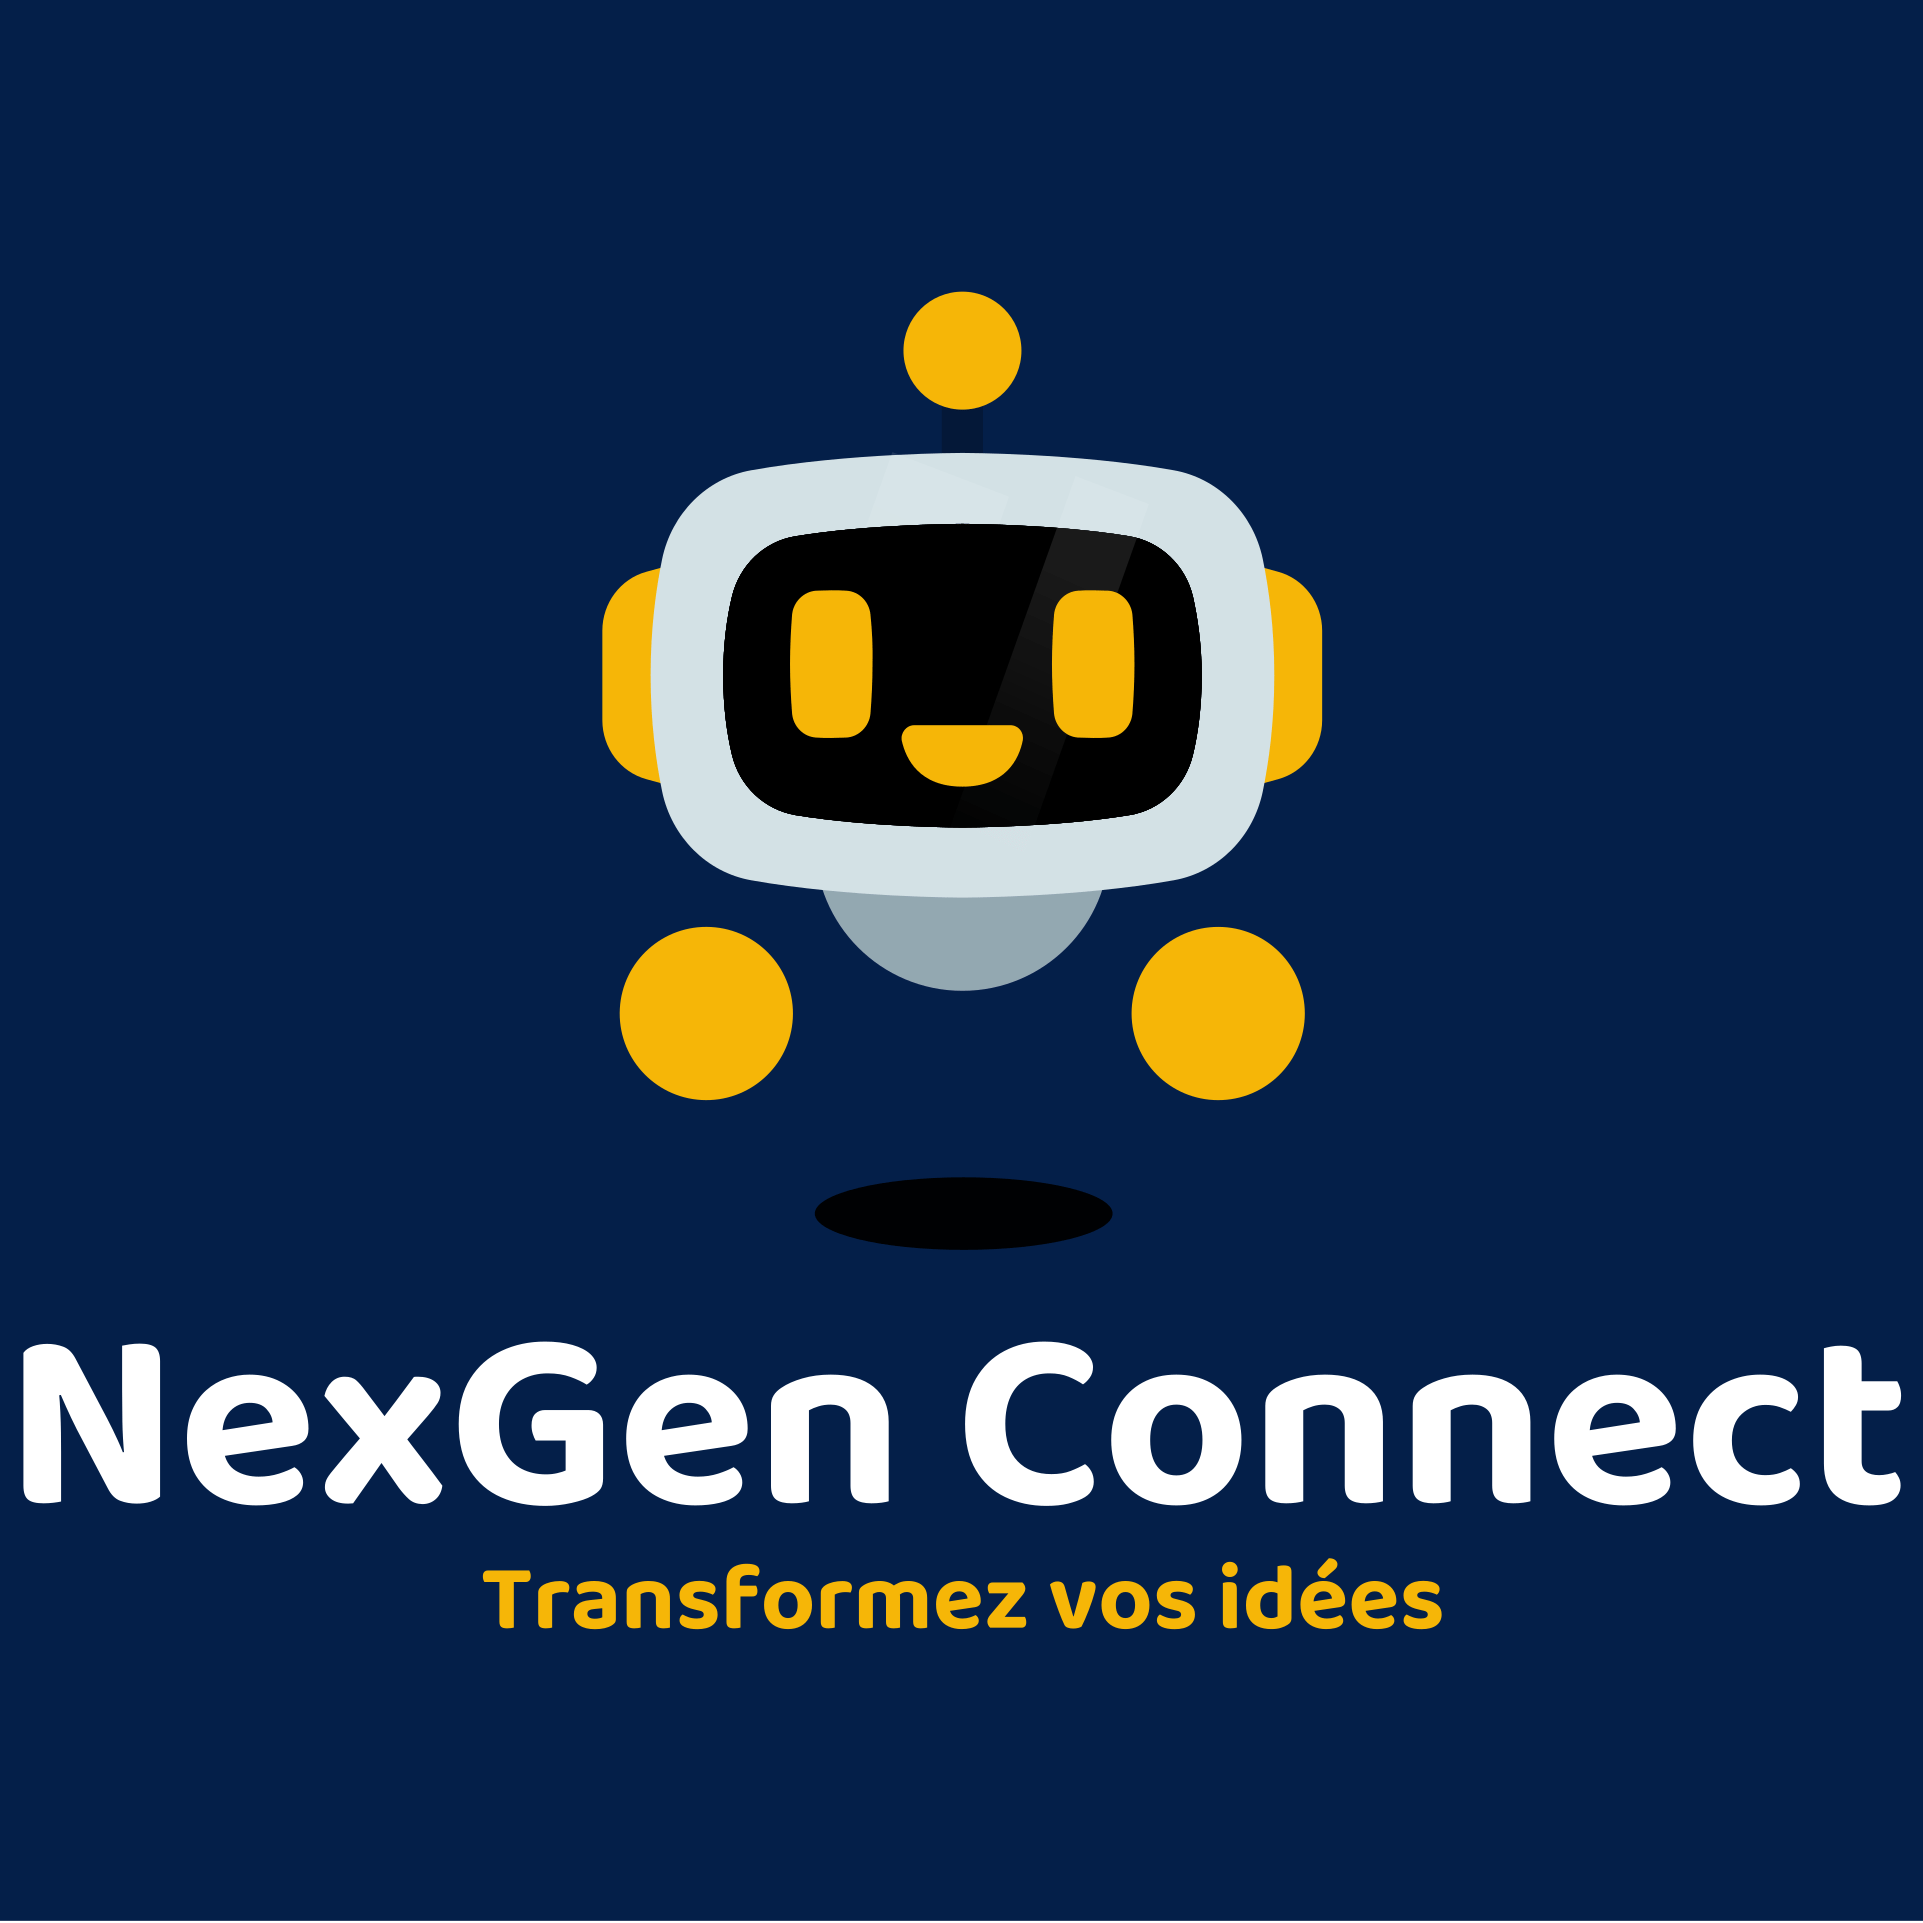 Nexgen connect